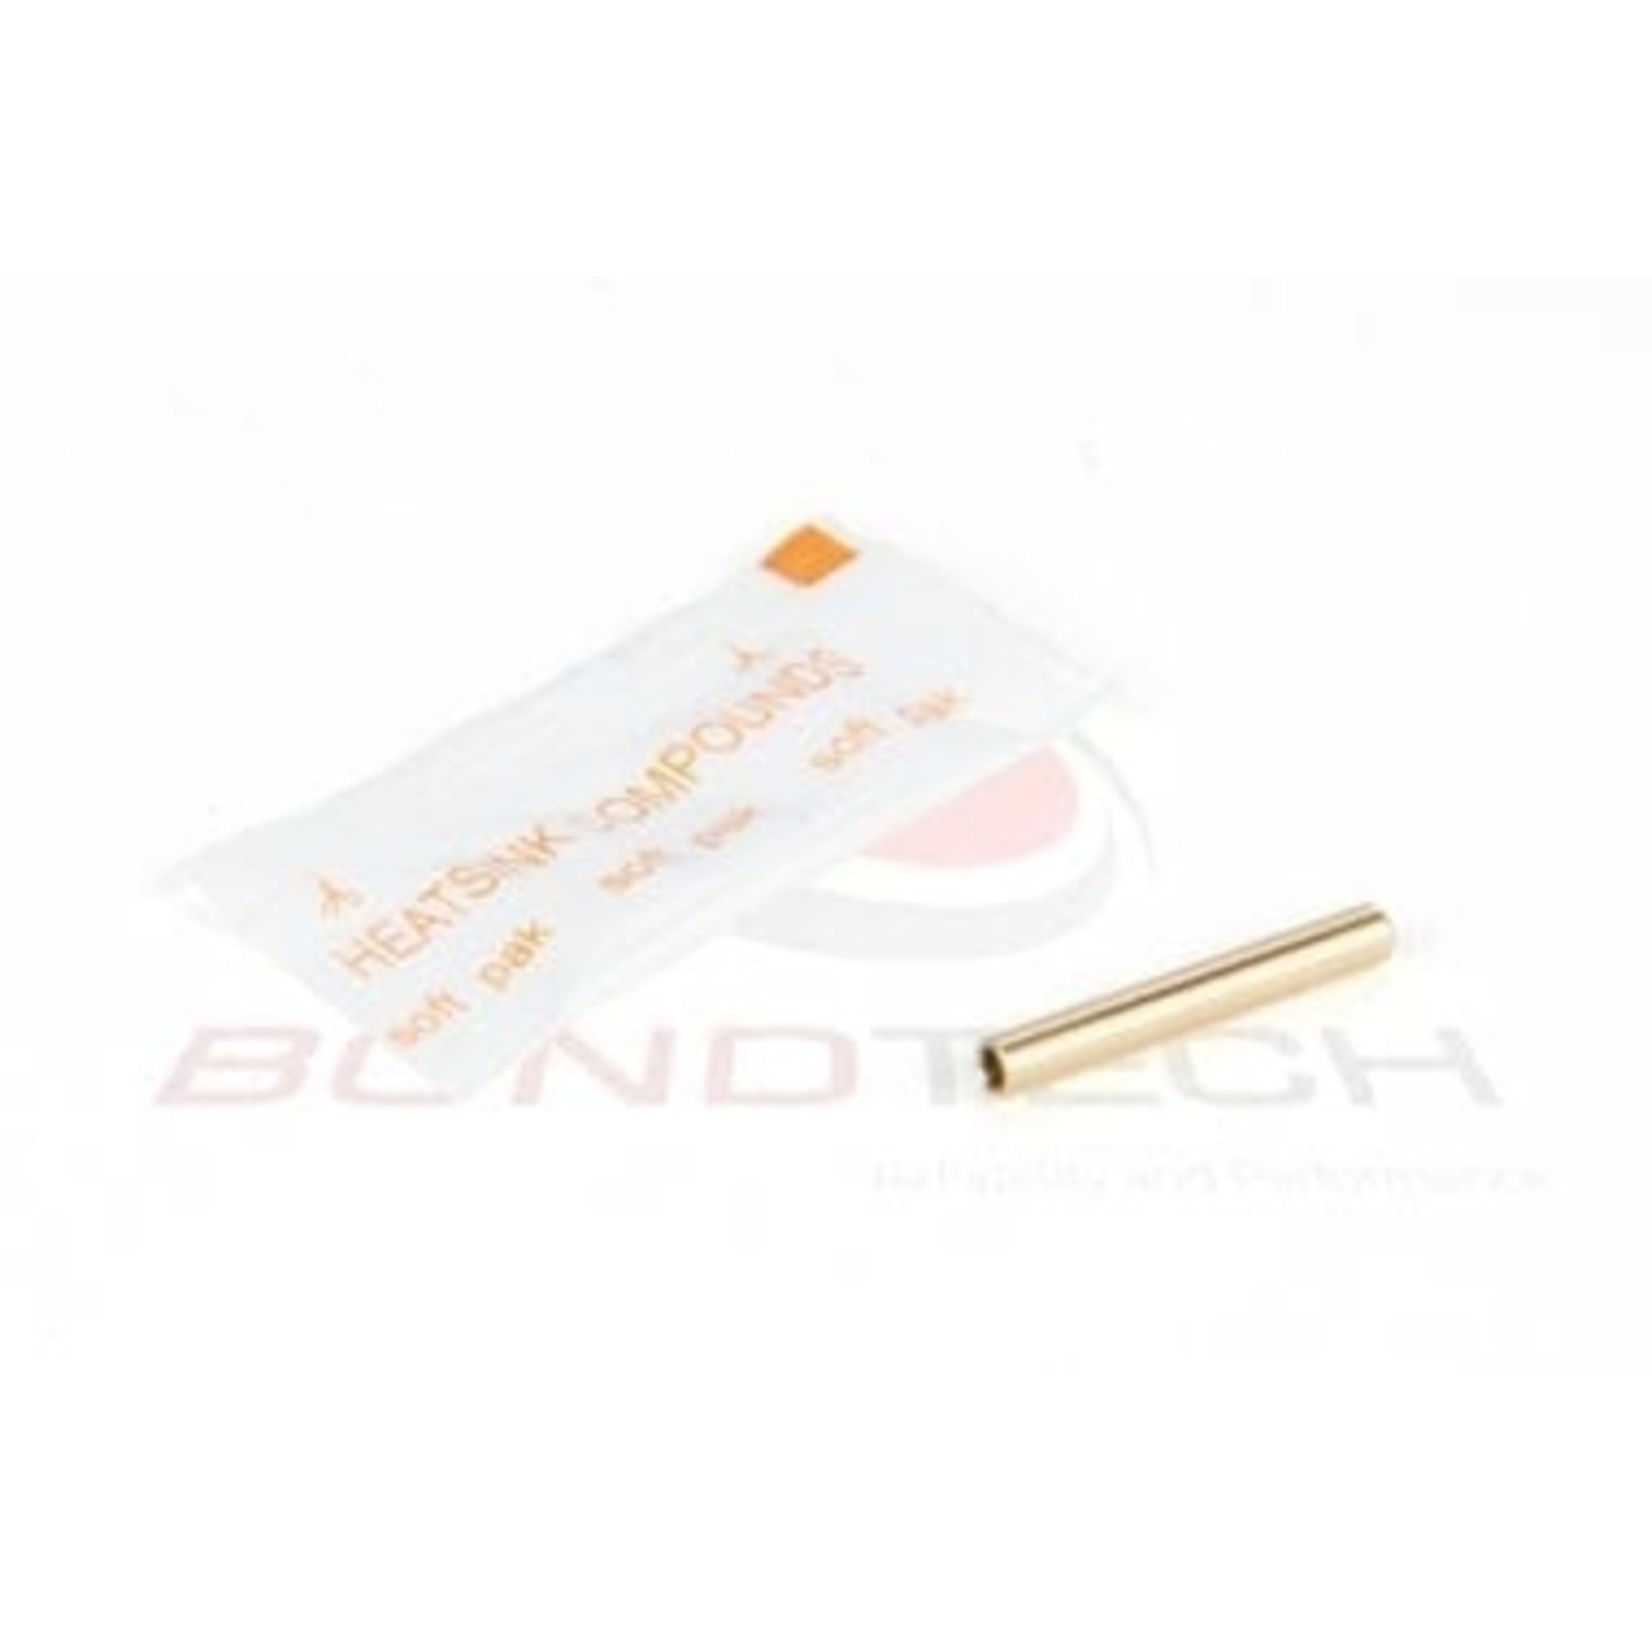 Bondtech DDX Thermistor Adapteur 3.0 mm